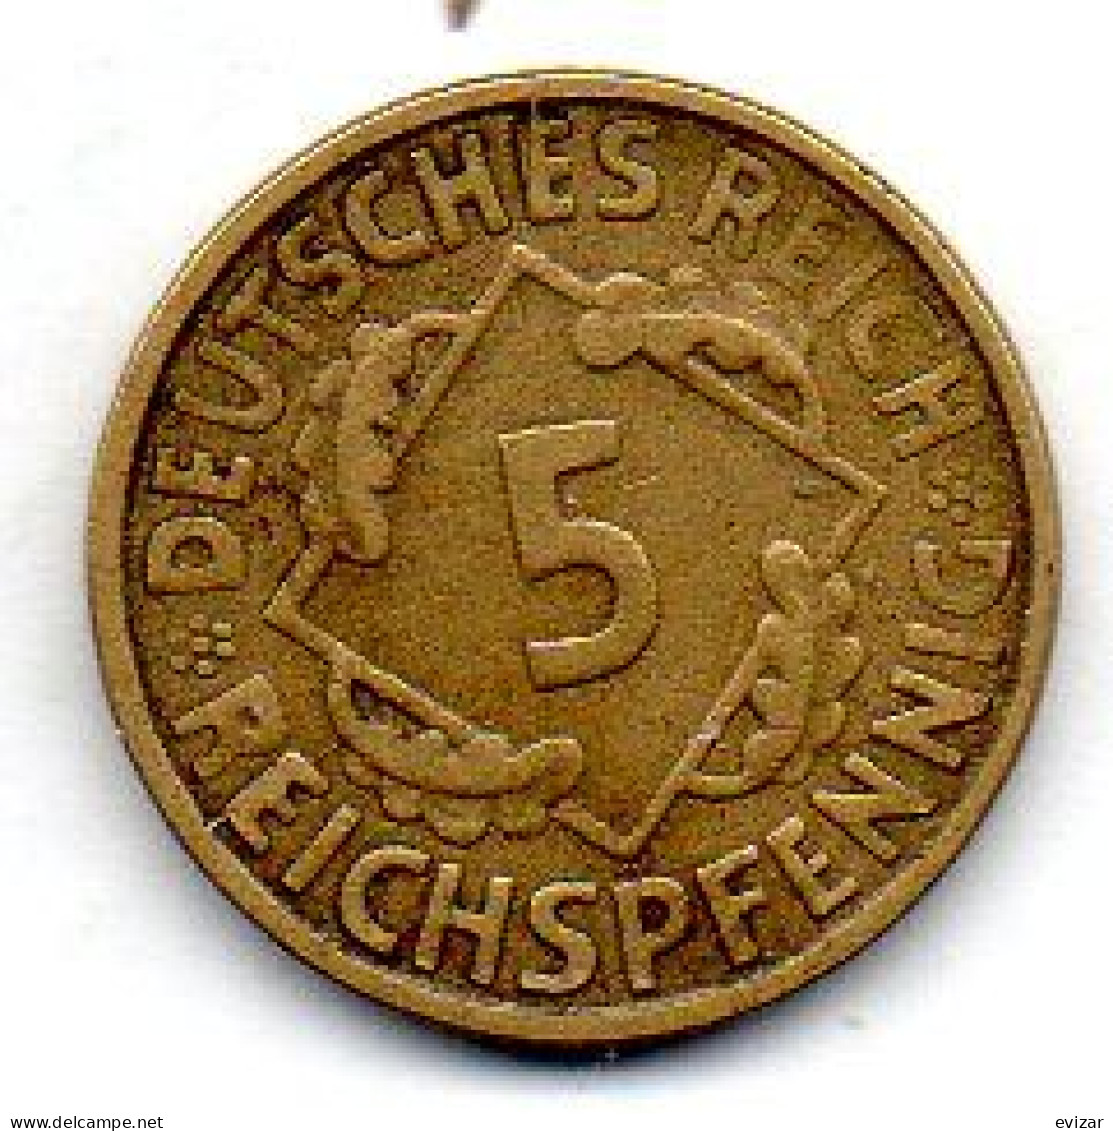 GERMANY - WEIMAR REPUBLIC, 5 Reichs Pfennig, Aluminum-Bronze, Year 1925-E, KM # 39 - 5 Rentenpfennig & 5 Reichspfennig